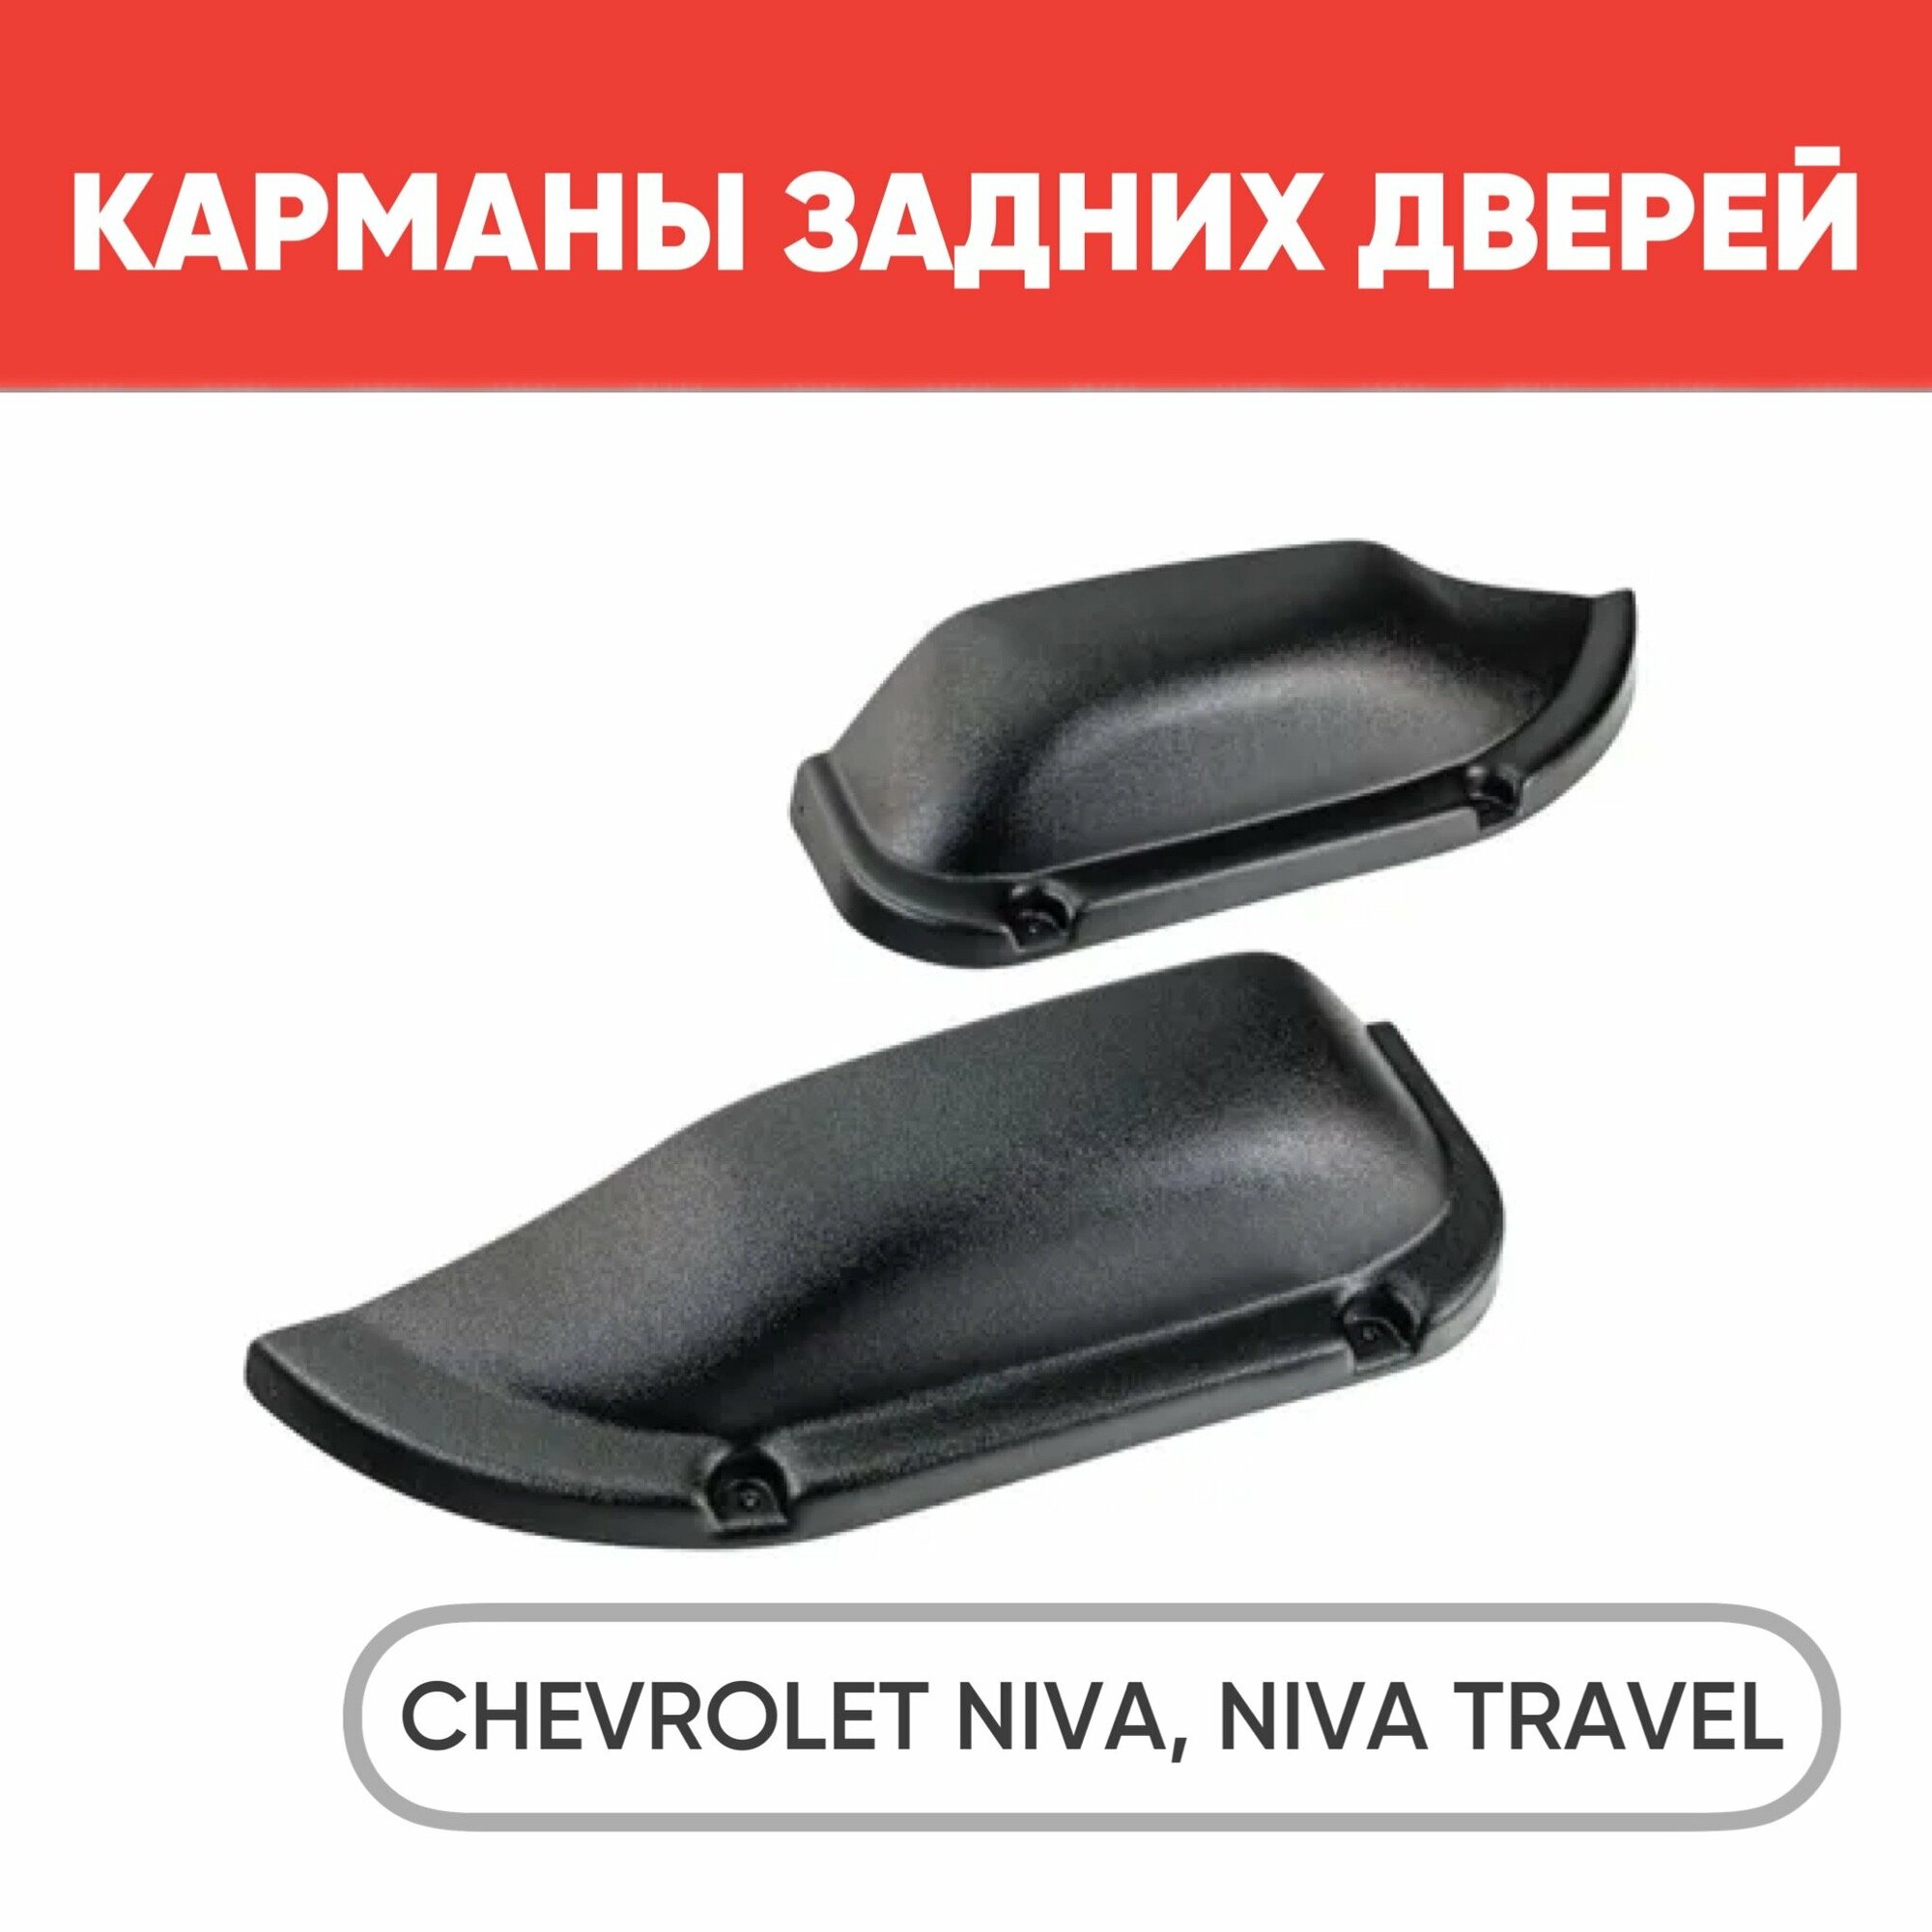 Карманы обивок задних дверей для Шевроле Нива, Нива Тревел, 2 шт, черные / Карманы на двери Chevrolet Niva